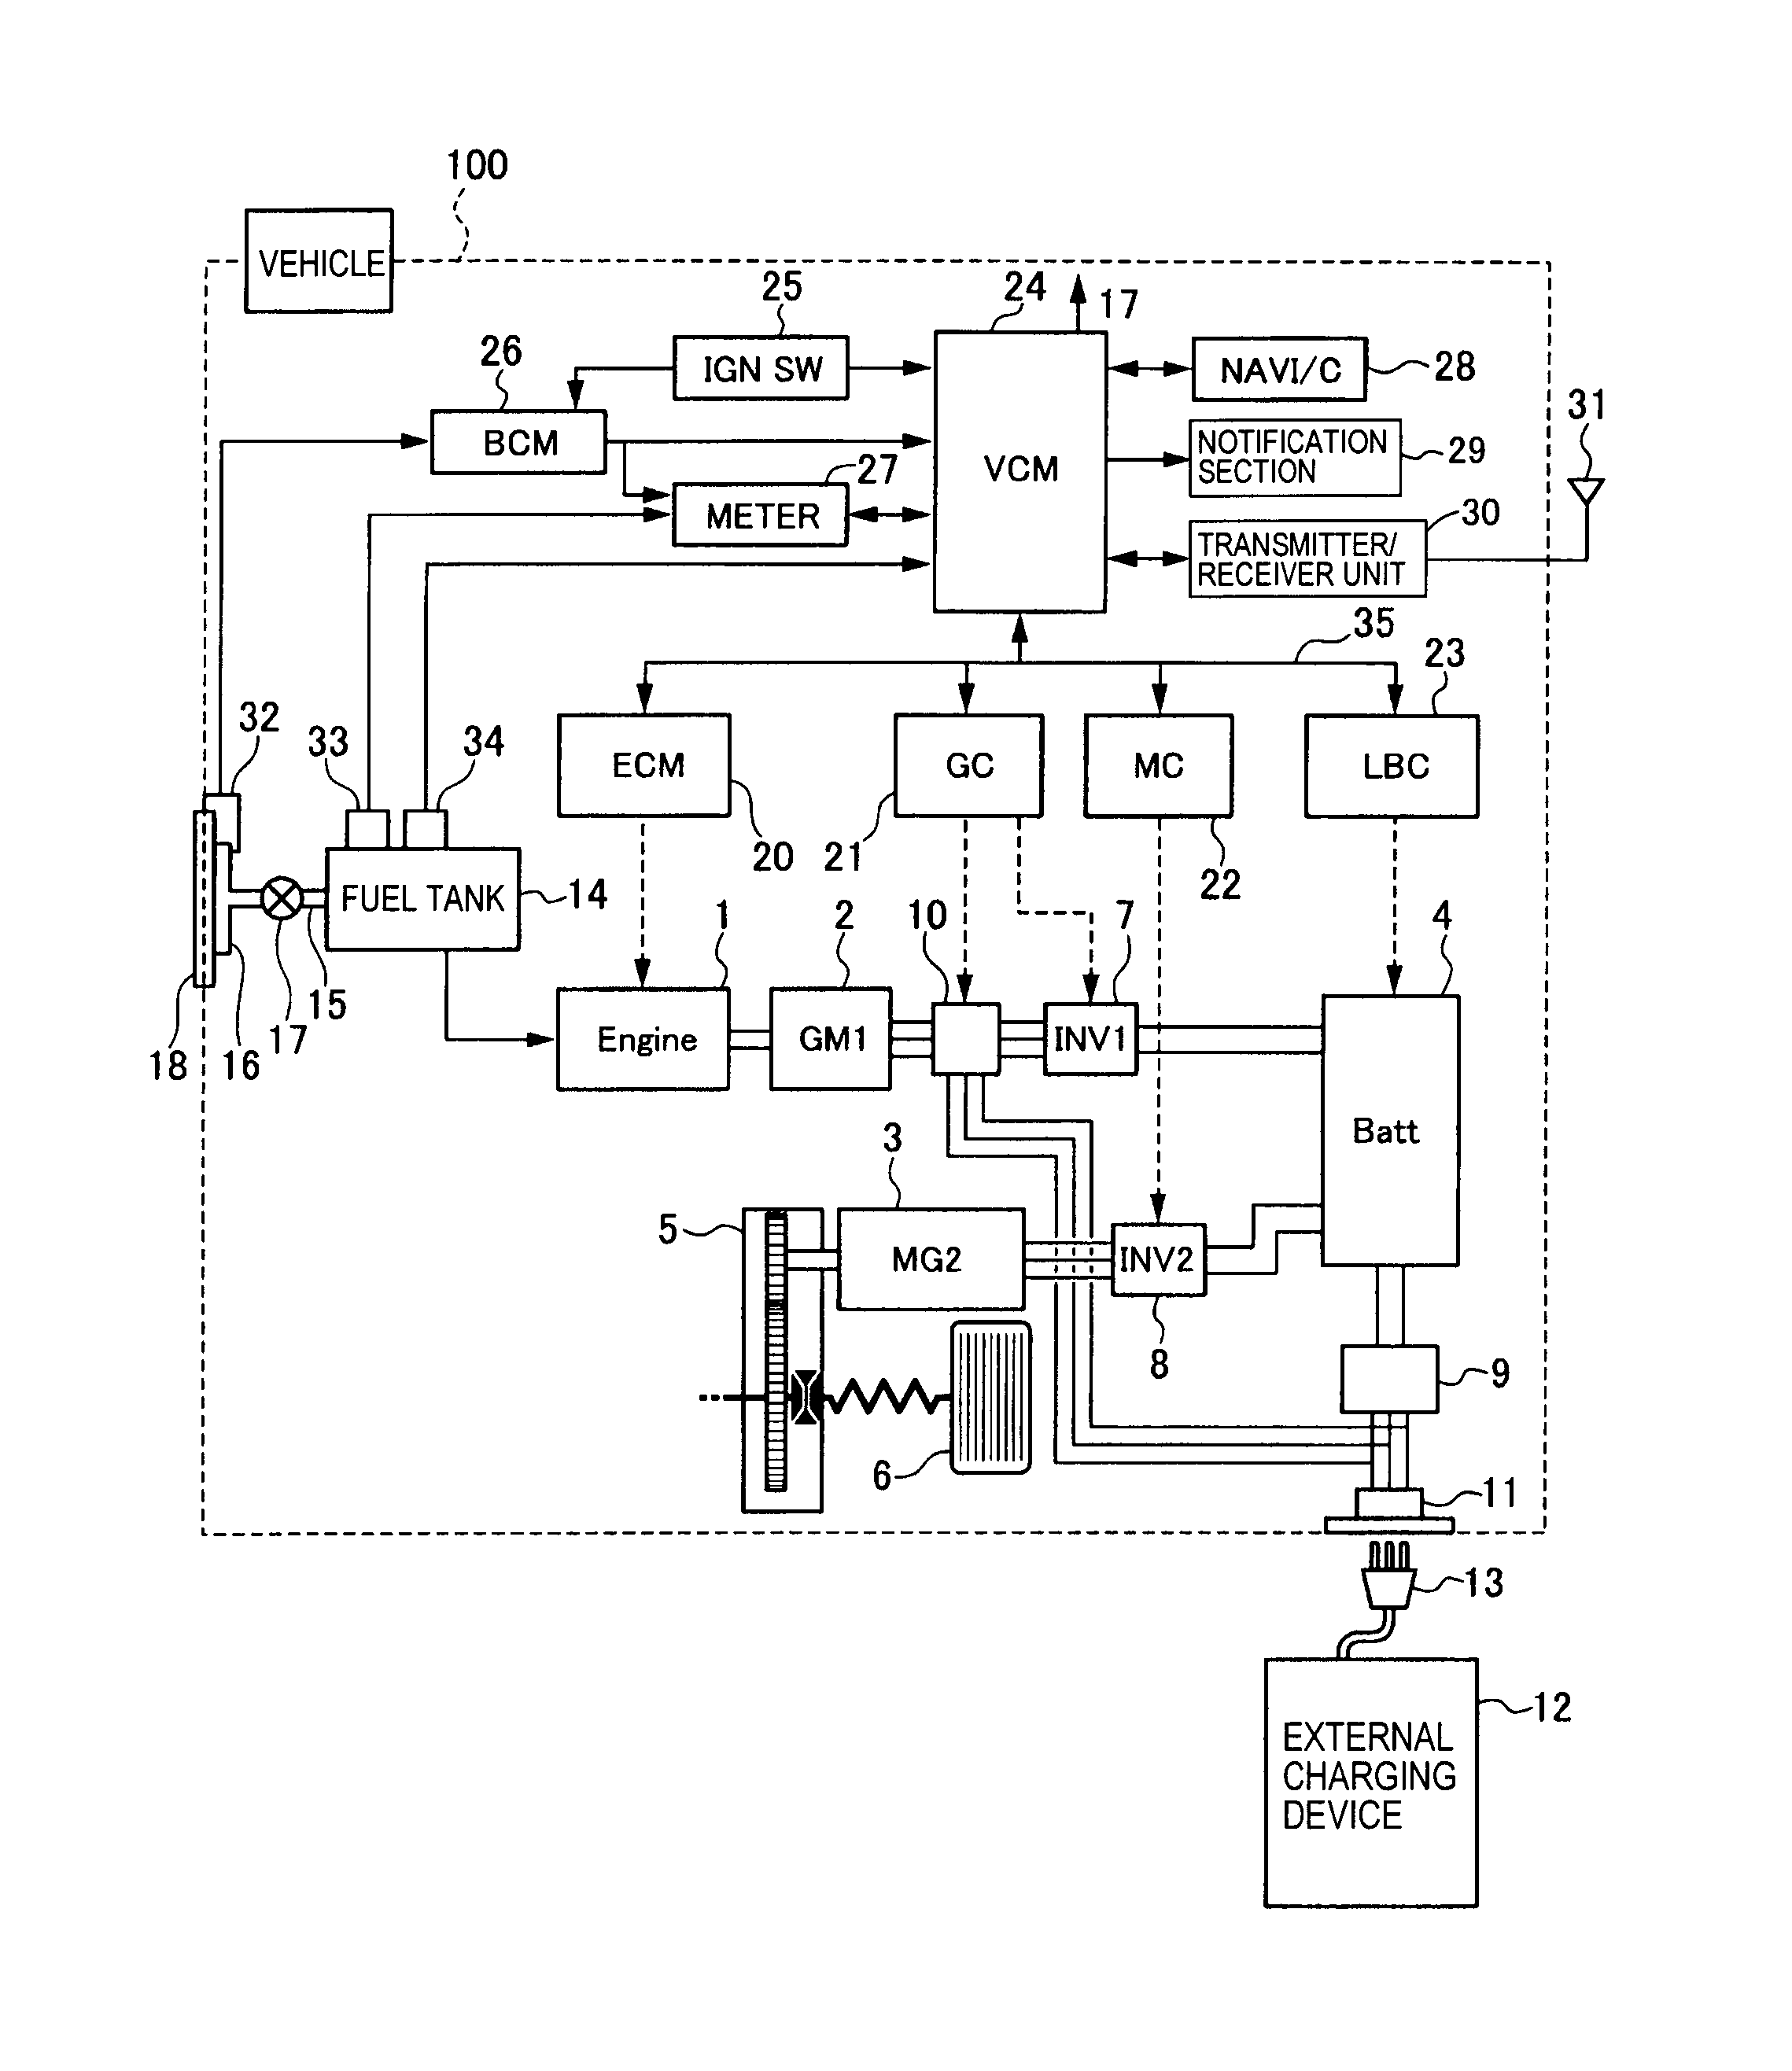 enphase m215 wiring diagram